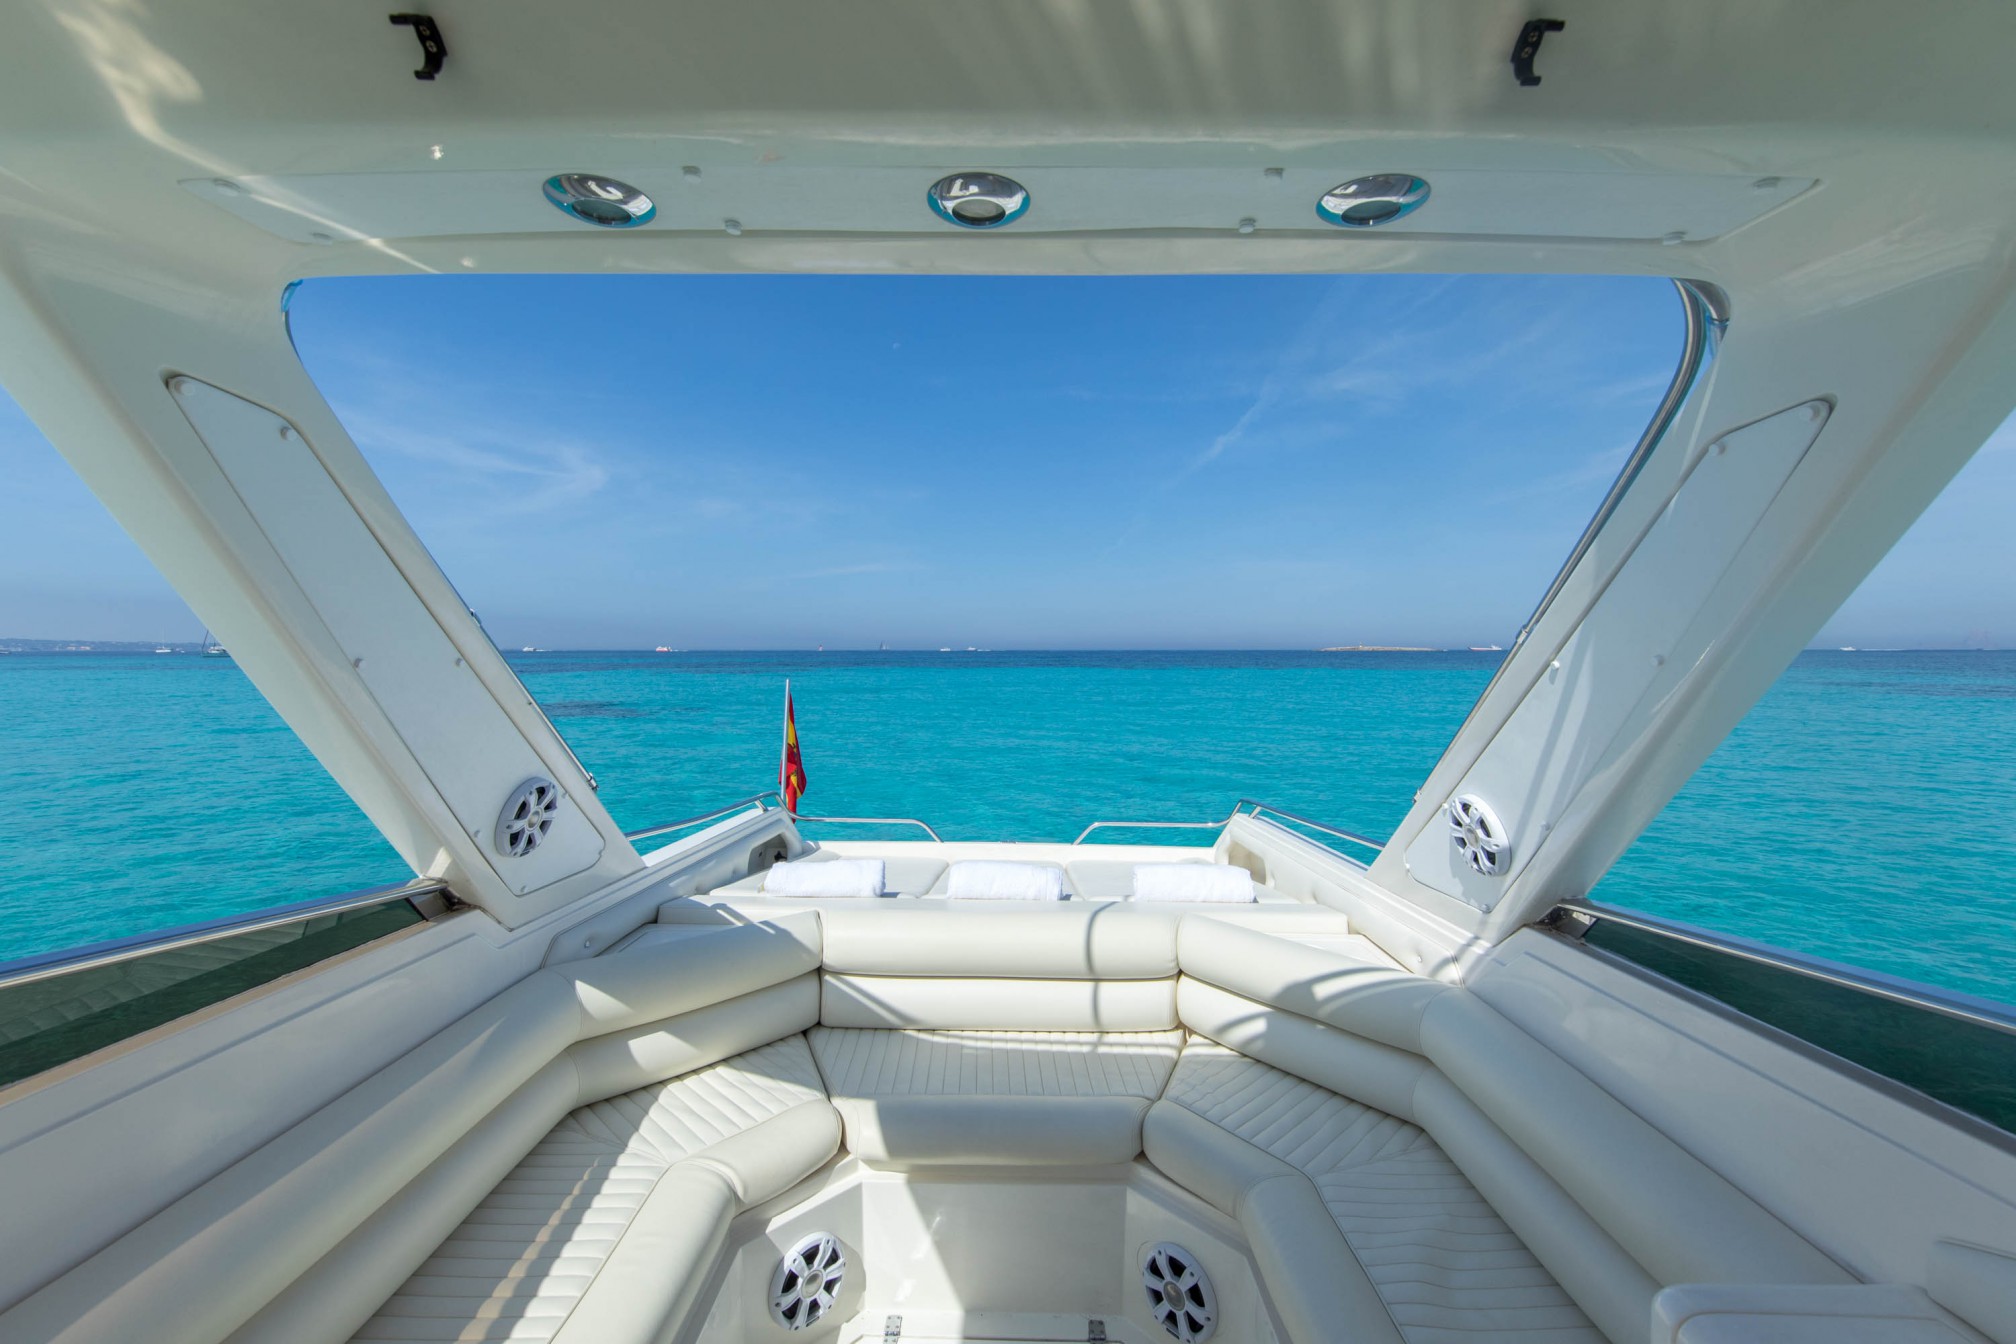 Rental yacht Sunseeker 43 outdoors